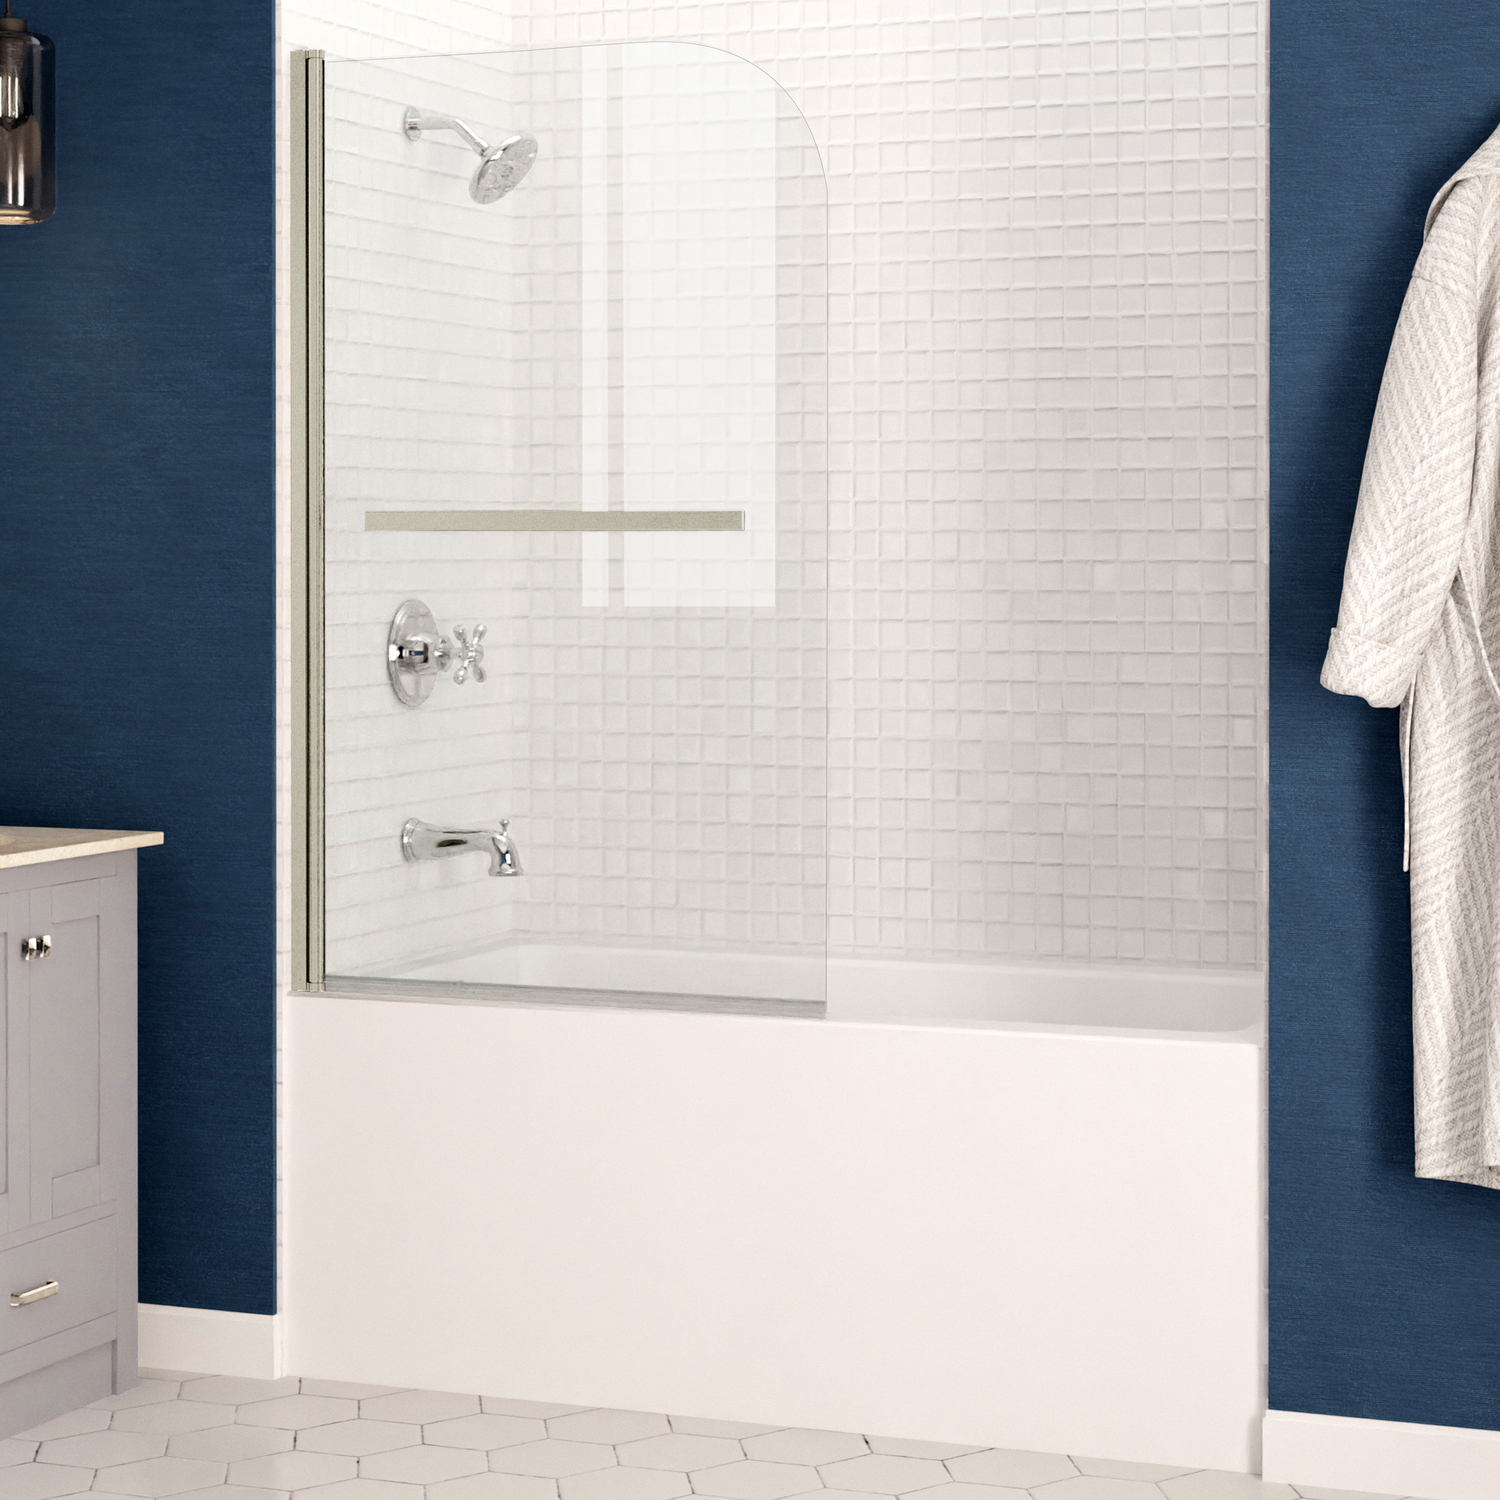 tub for elderly Anzzi BATHROOM - Bathtubs - Drop-in Bathtub - Alcove - Soaker White